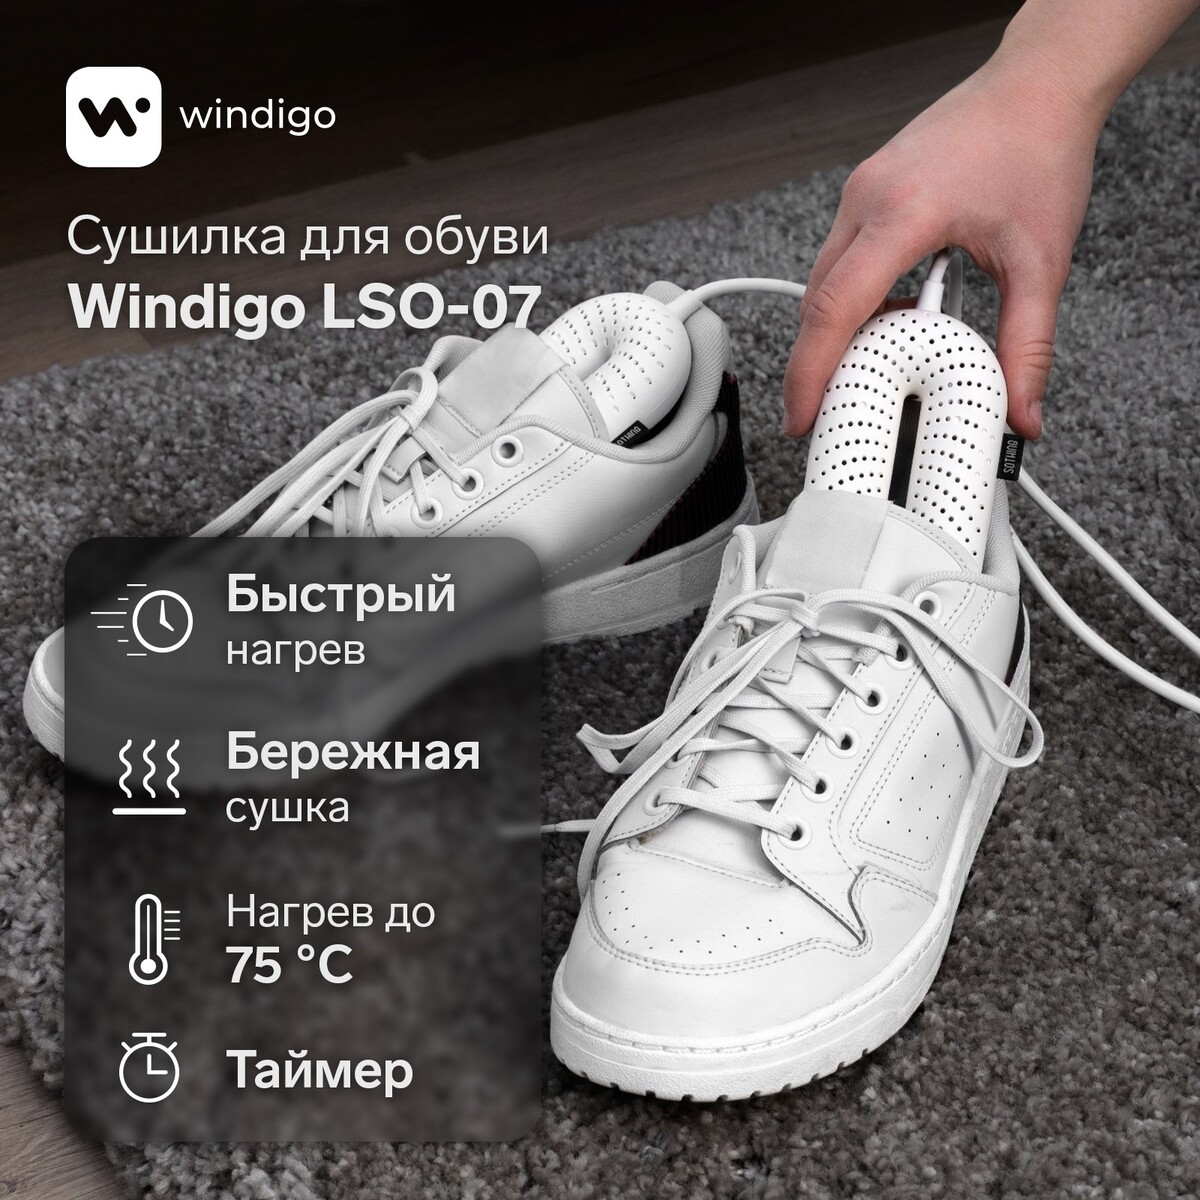 фото Сушилка для обуви windigo lso-07, 17 см, 20 вт, индикатор, таймер 3/6/9 часов, белая